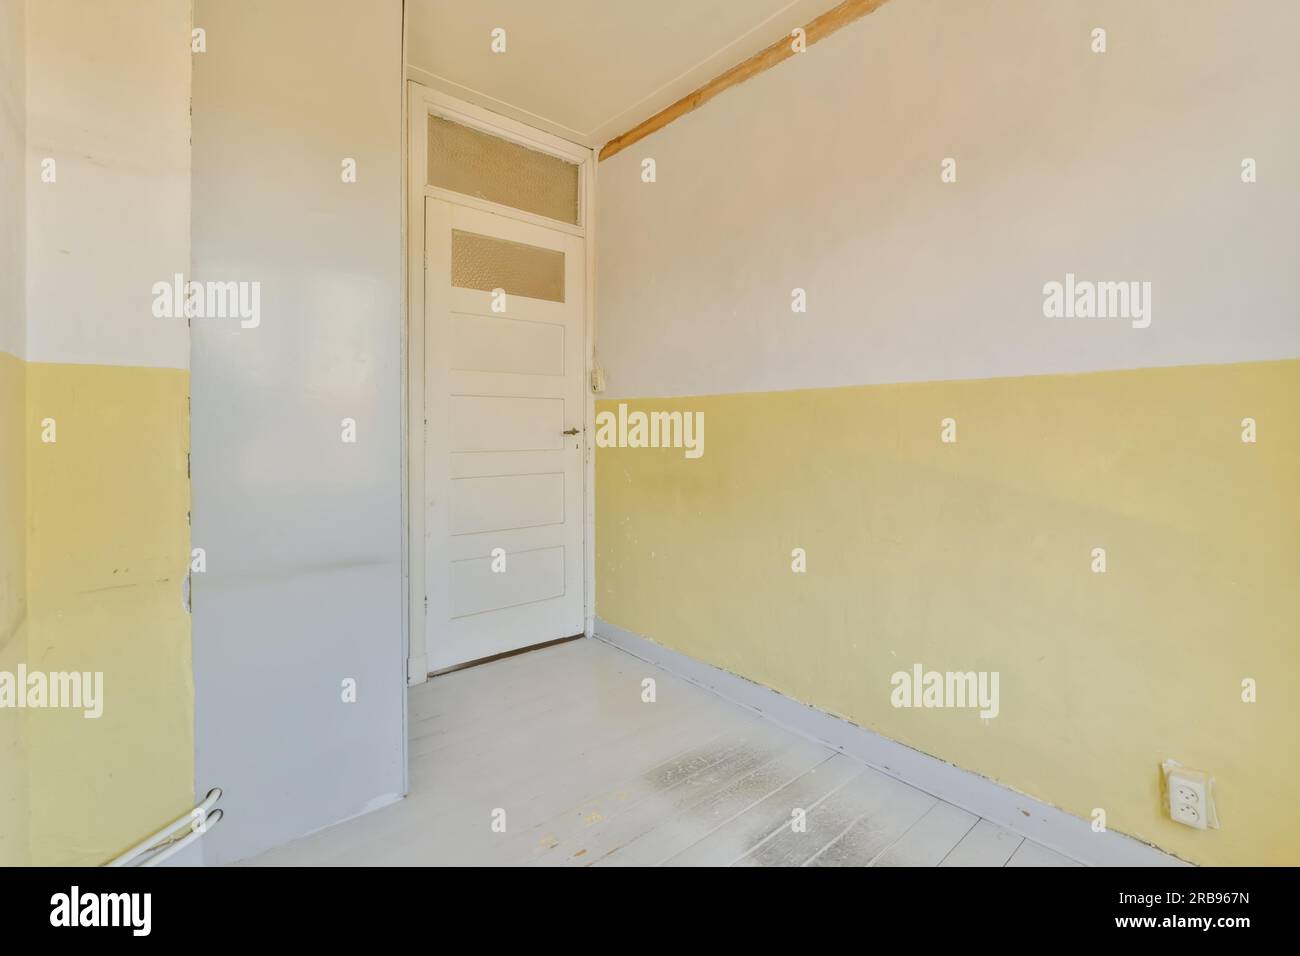 Ein leerer Raum mit gelber Farbe an den Wänden und weißer Verkleidung um die Tür, die entfernt wurde Stockfoto